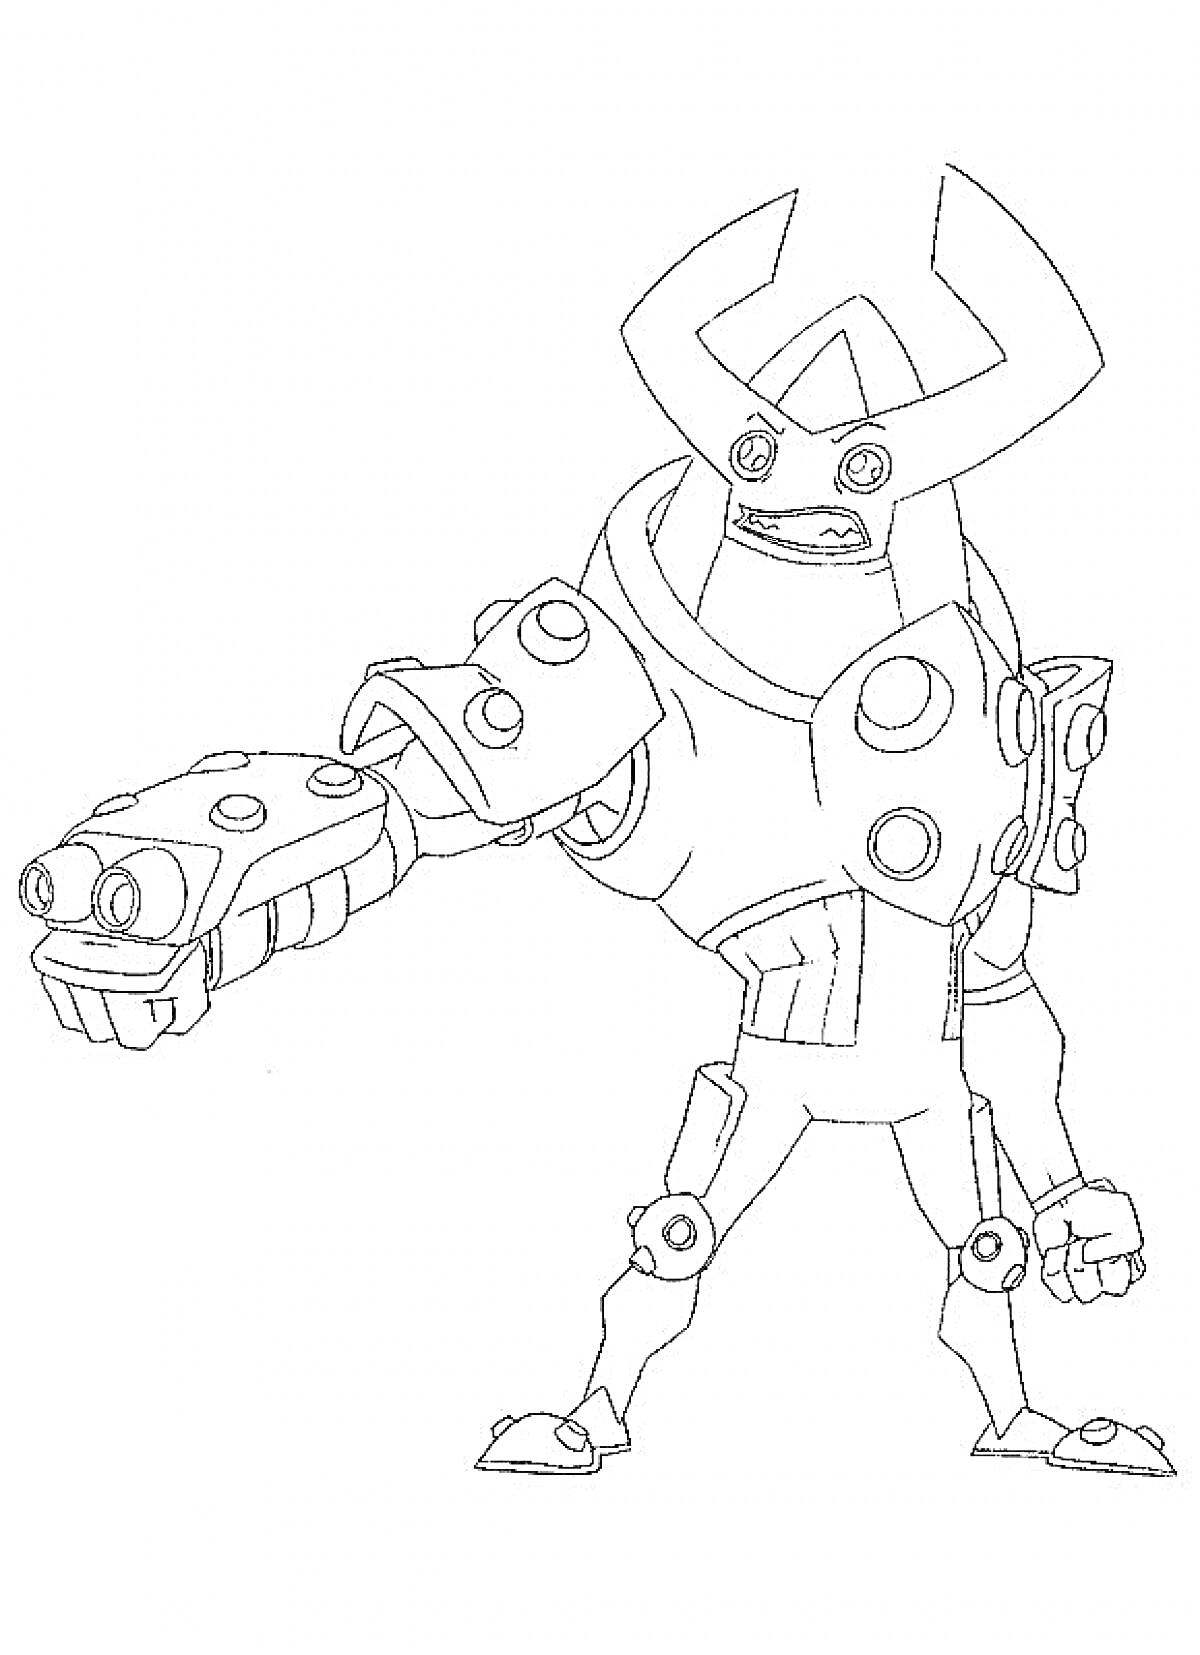 Робот-боец из игры Brawl Stars с протянутой рукой и гранатометом